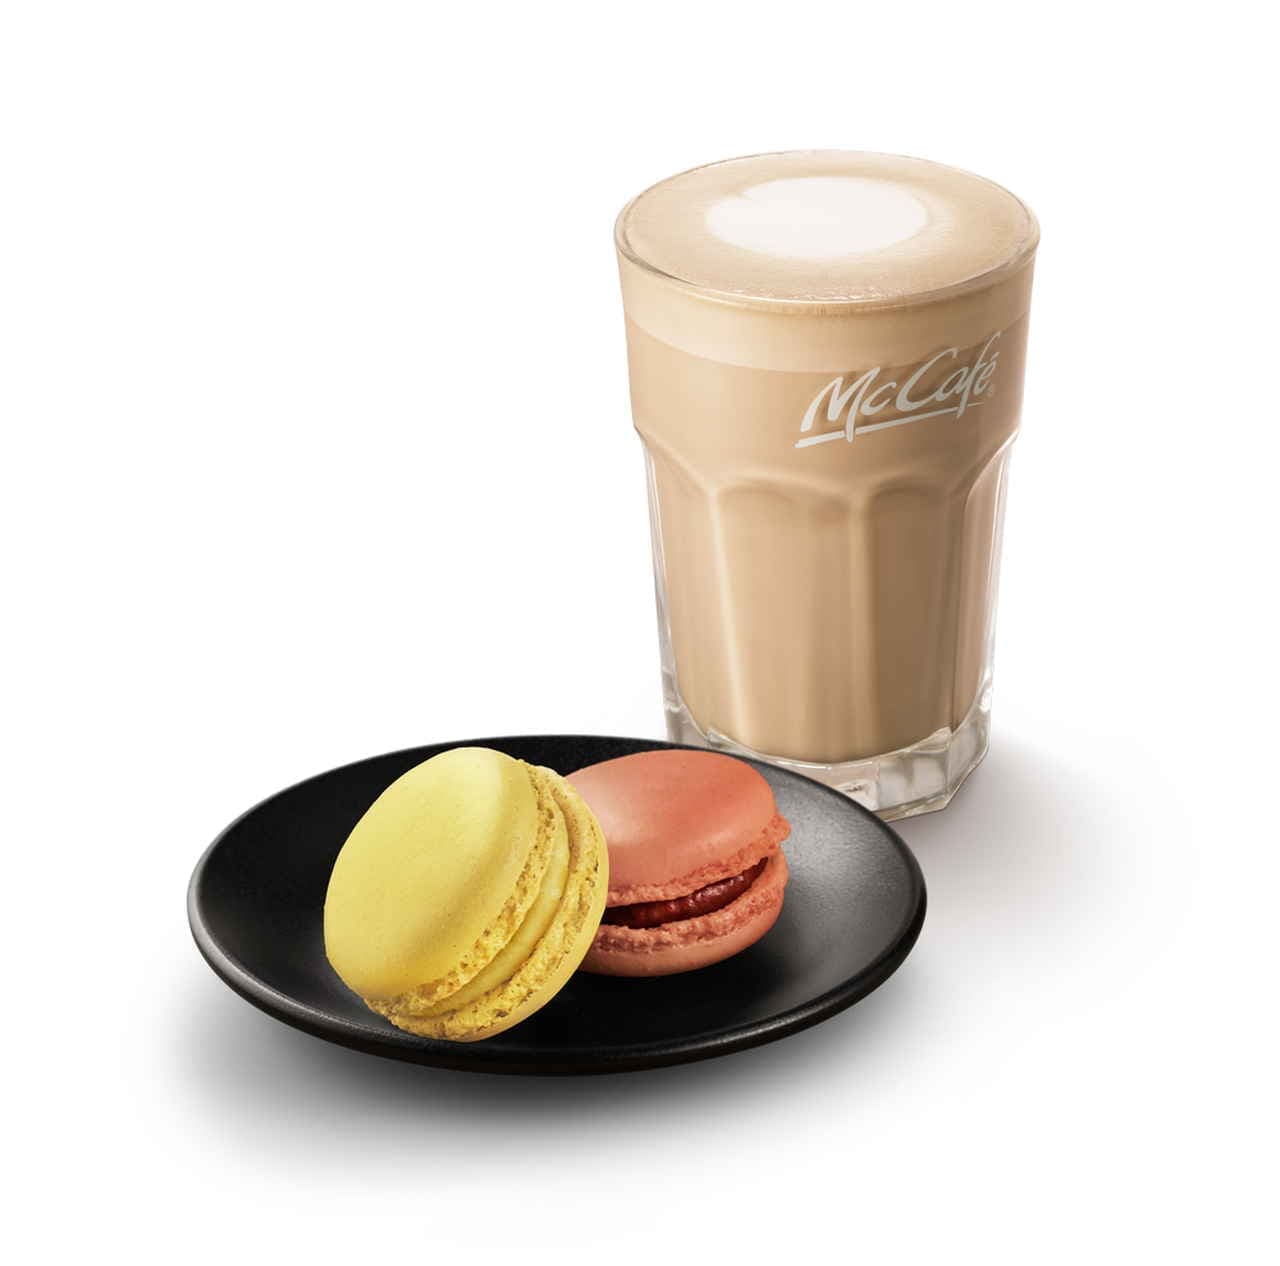 McCafé "Special Macaron Set"